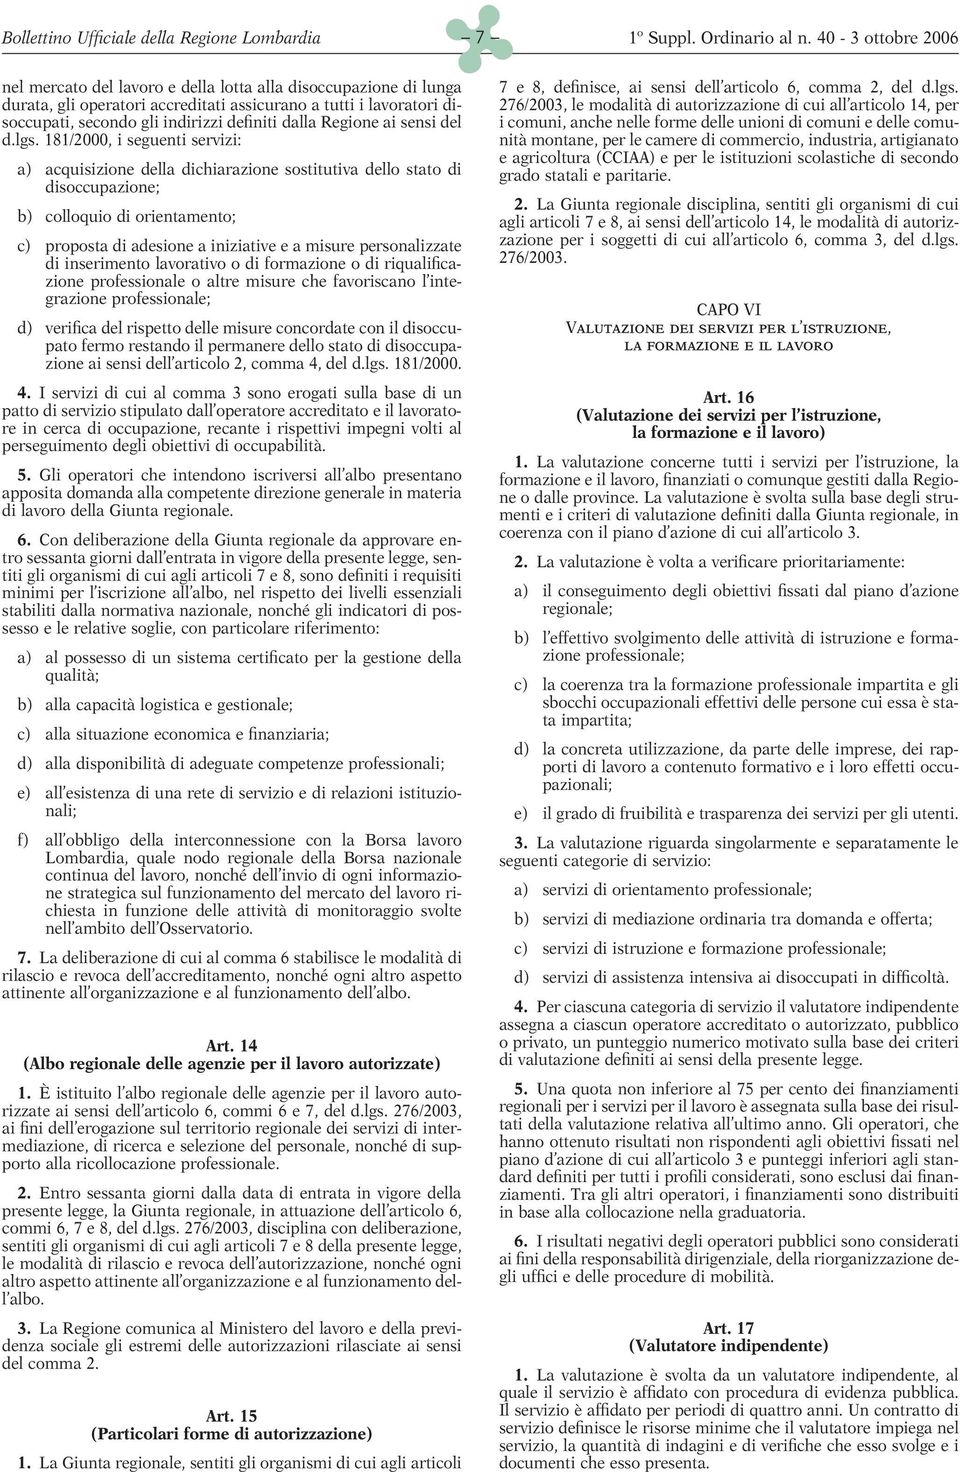 181/2000, i seguenti servizi: a) acquisizione della dichiarazione sostitutiva dello stato di disoccupazione; b) colloquio di orientamento; c) proposta di adesione a iniziative e a misure